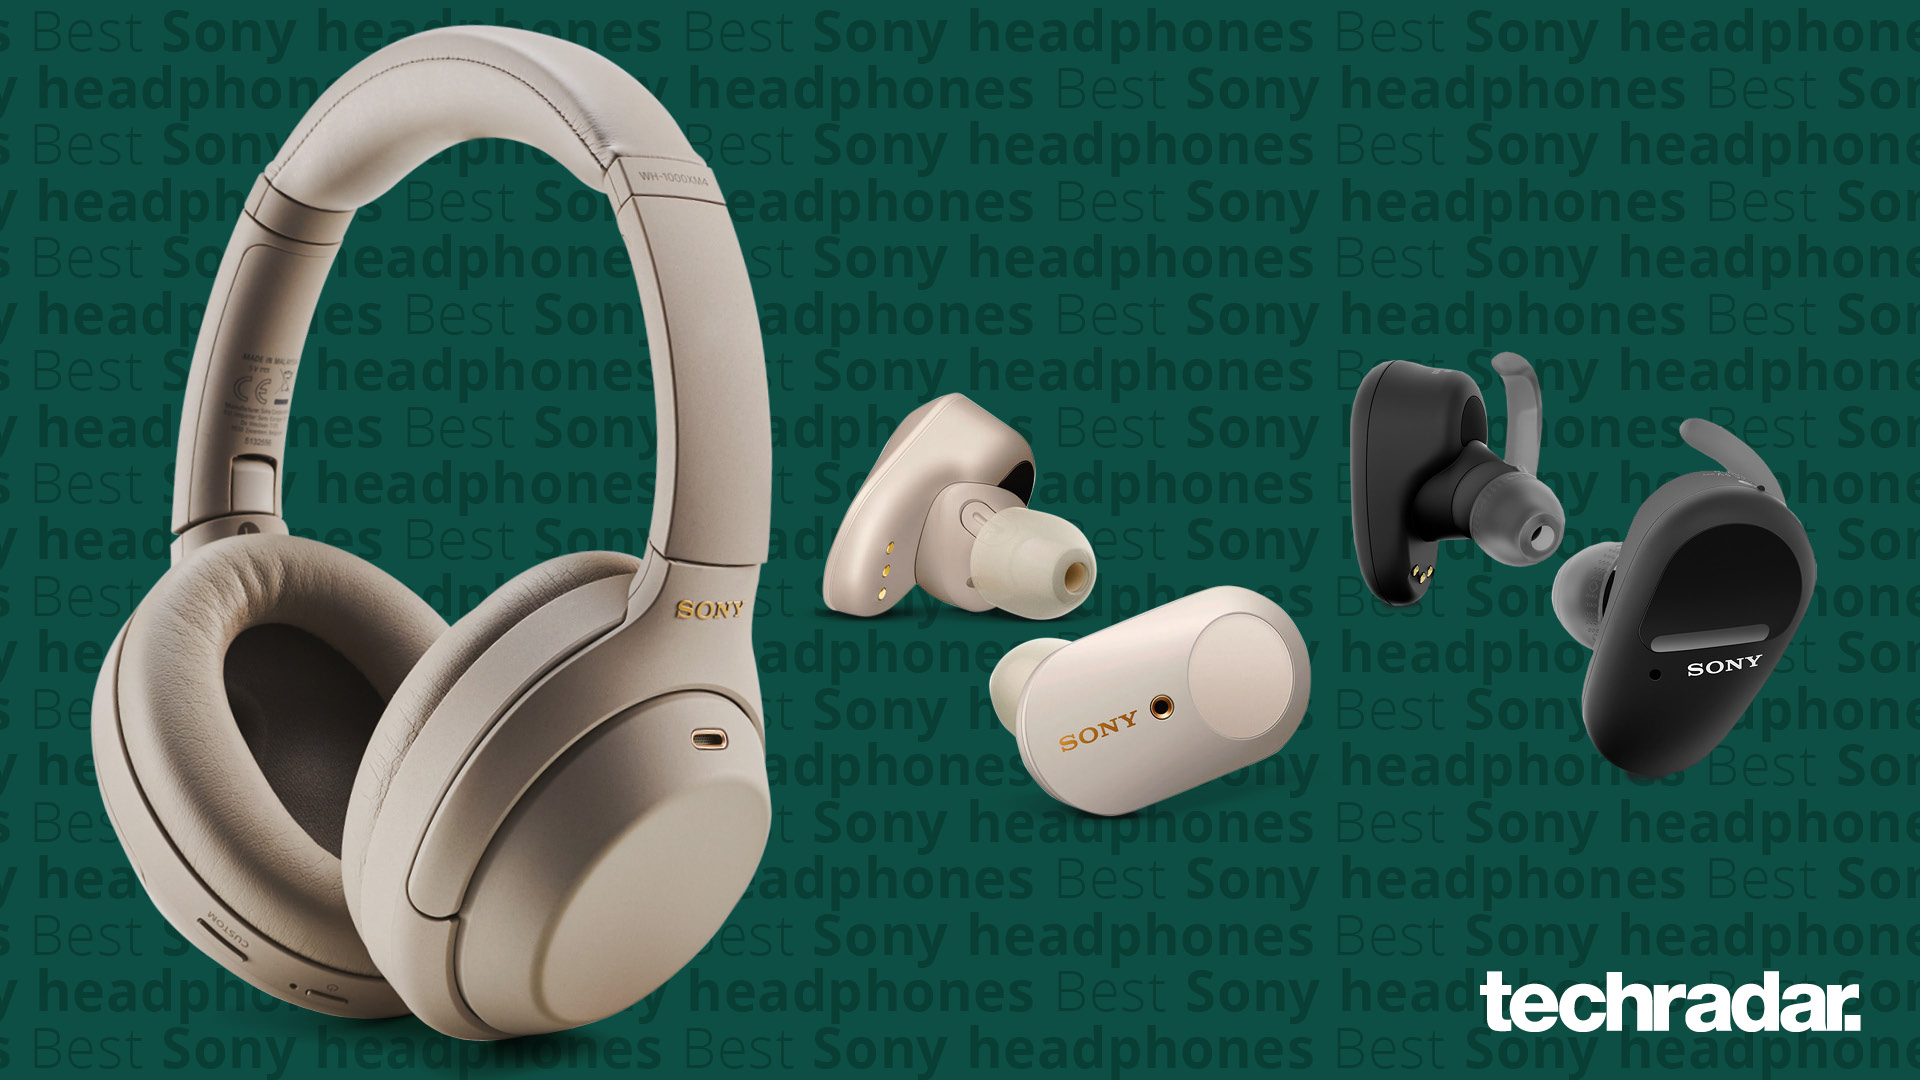 The best Sony headphones of 2022 | TechRadar